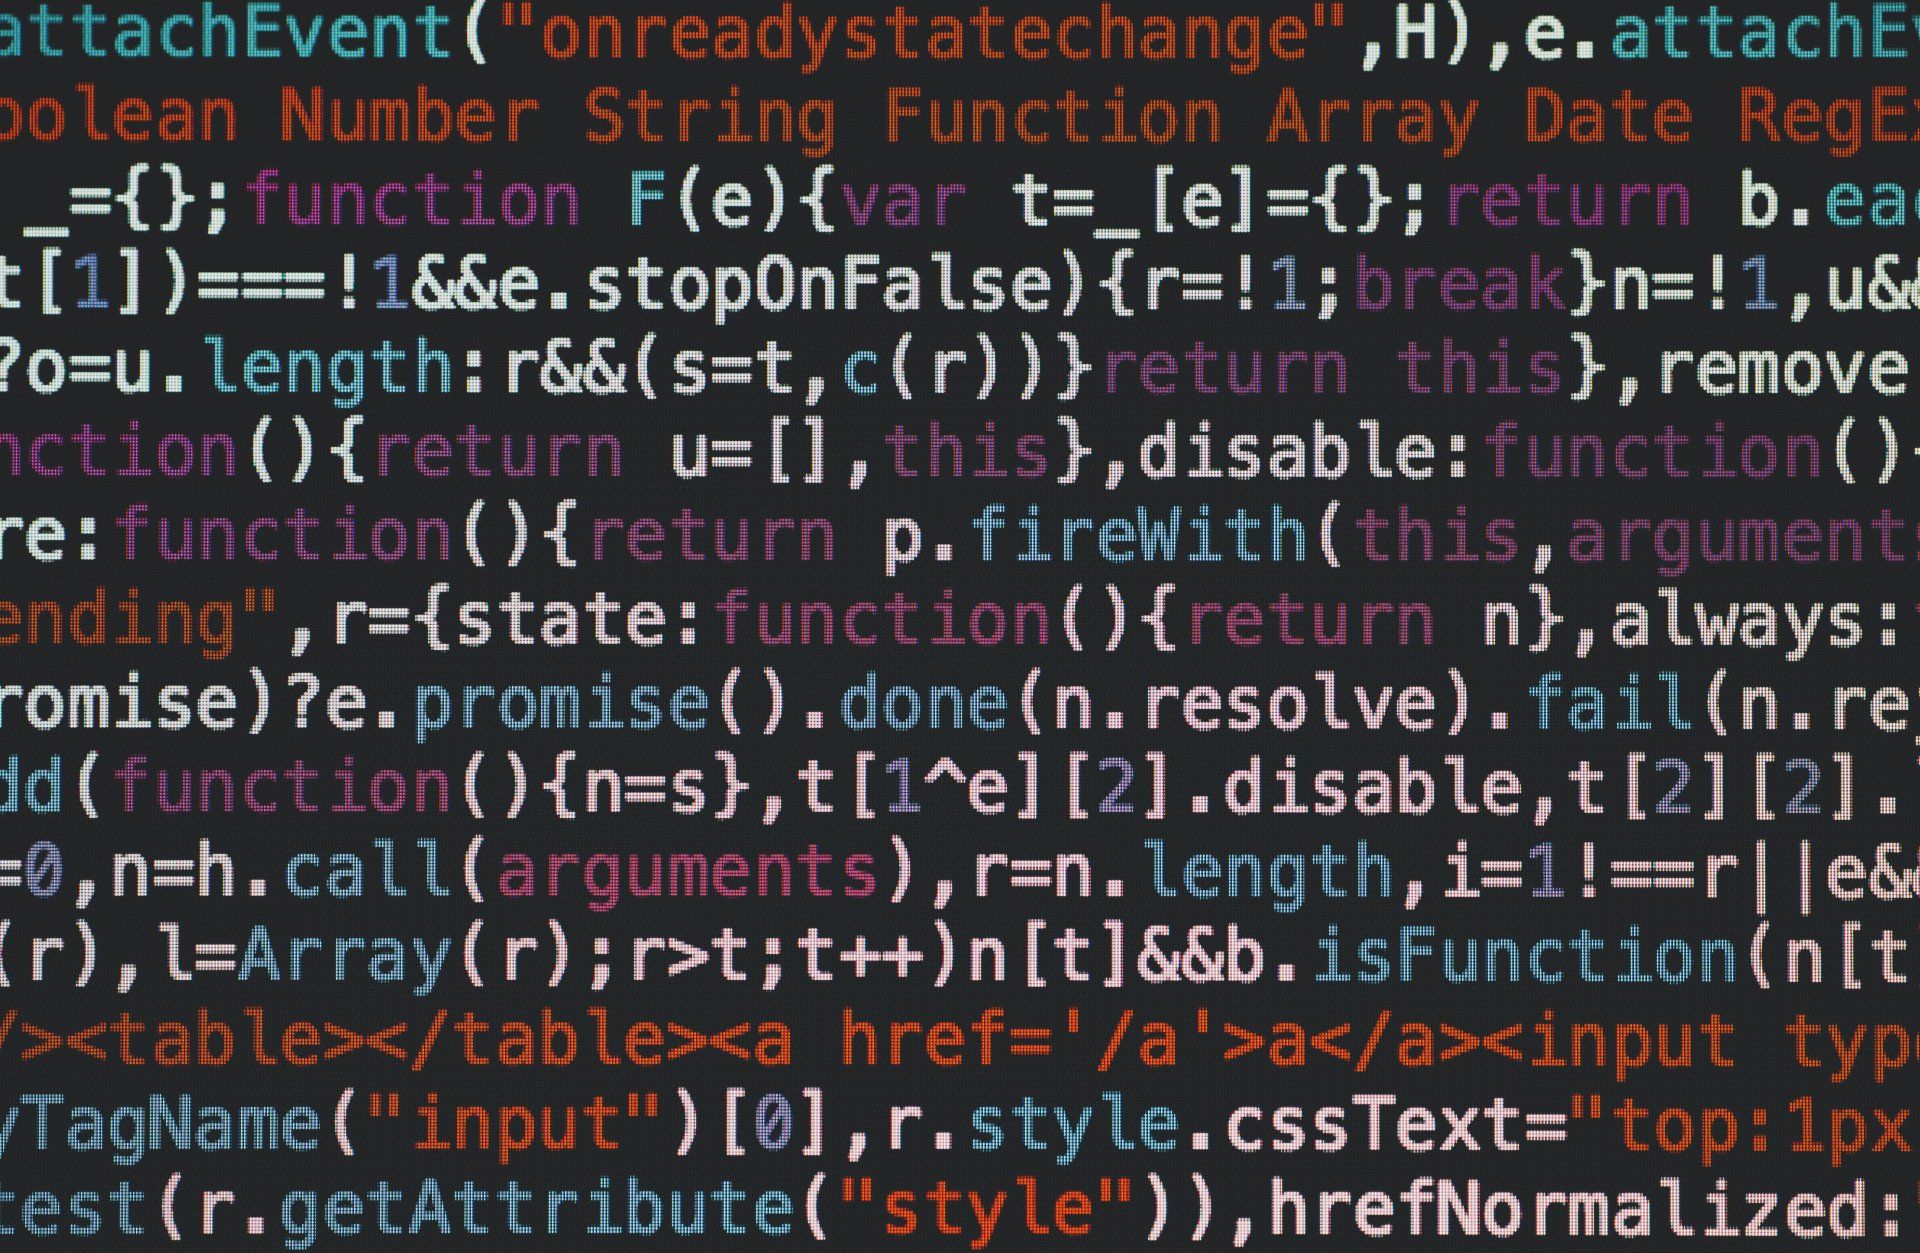 Screen full of code